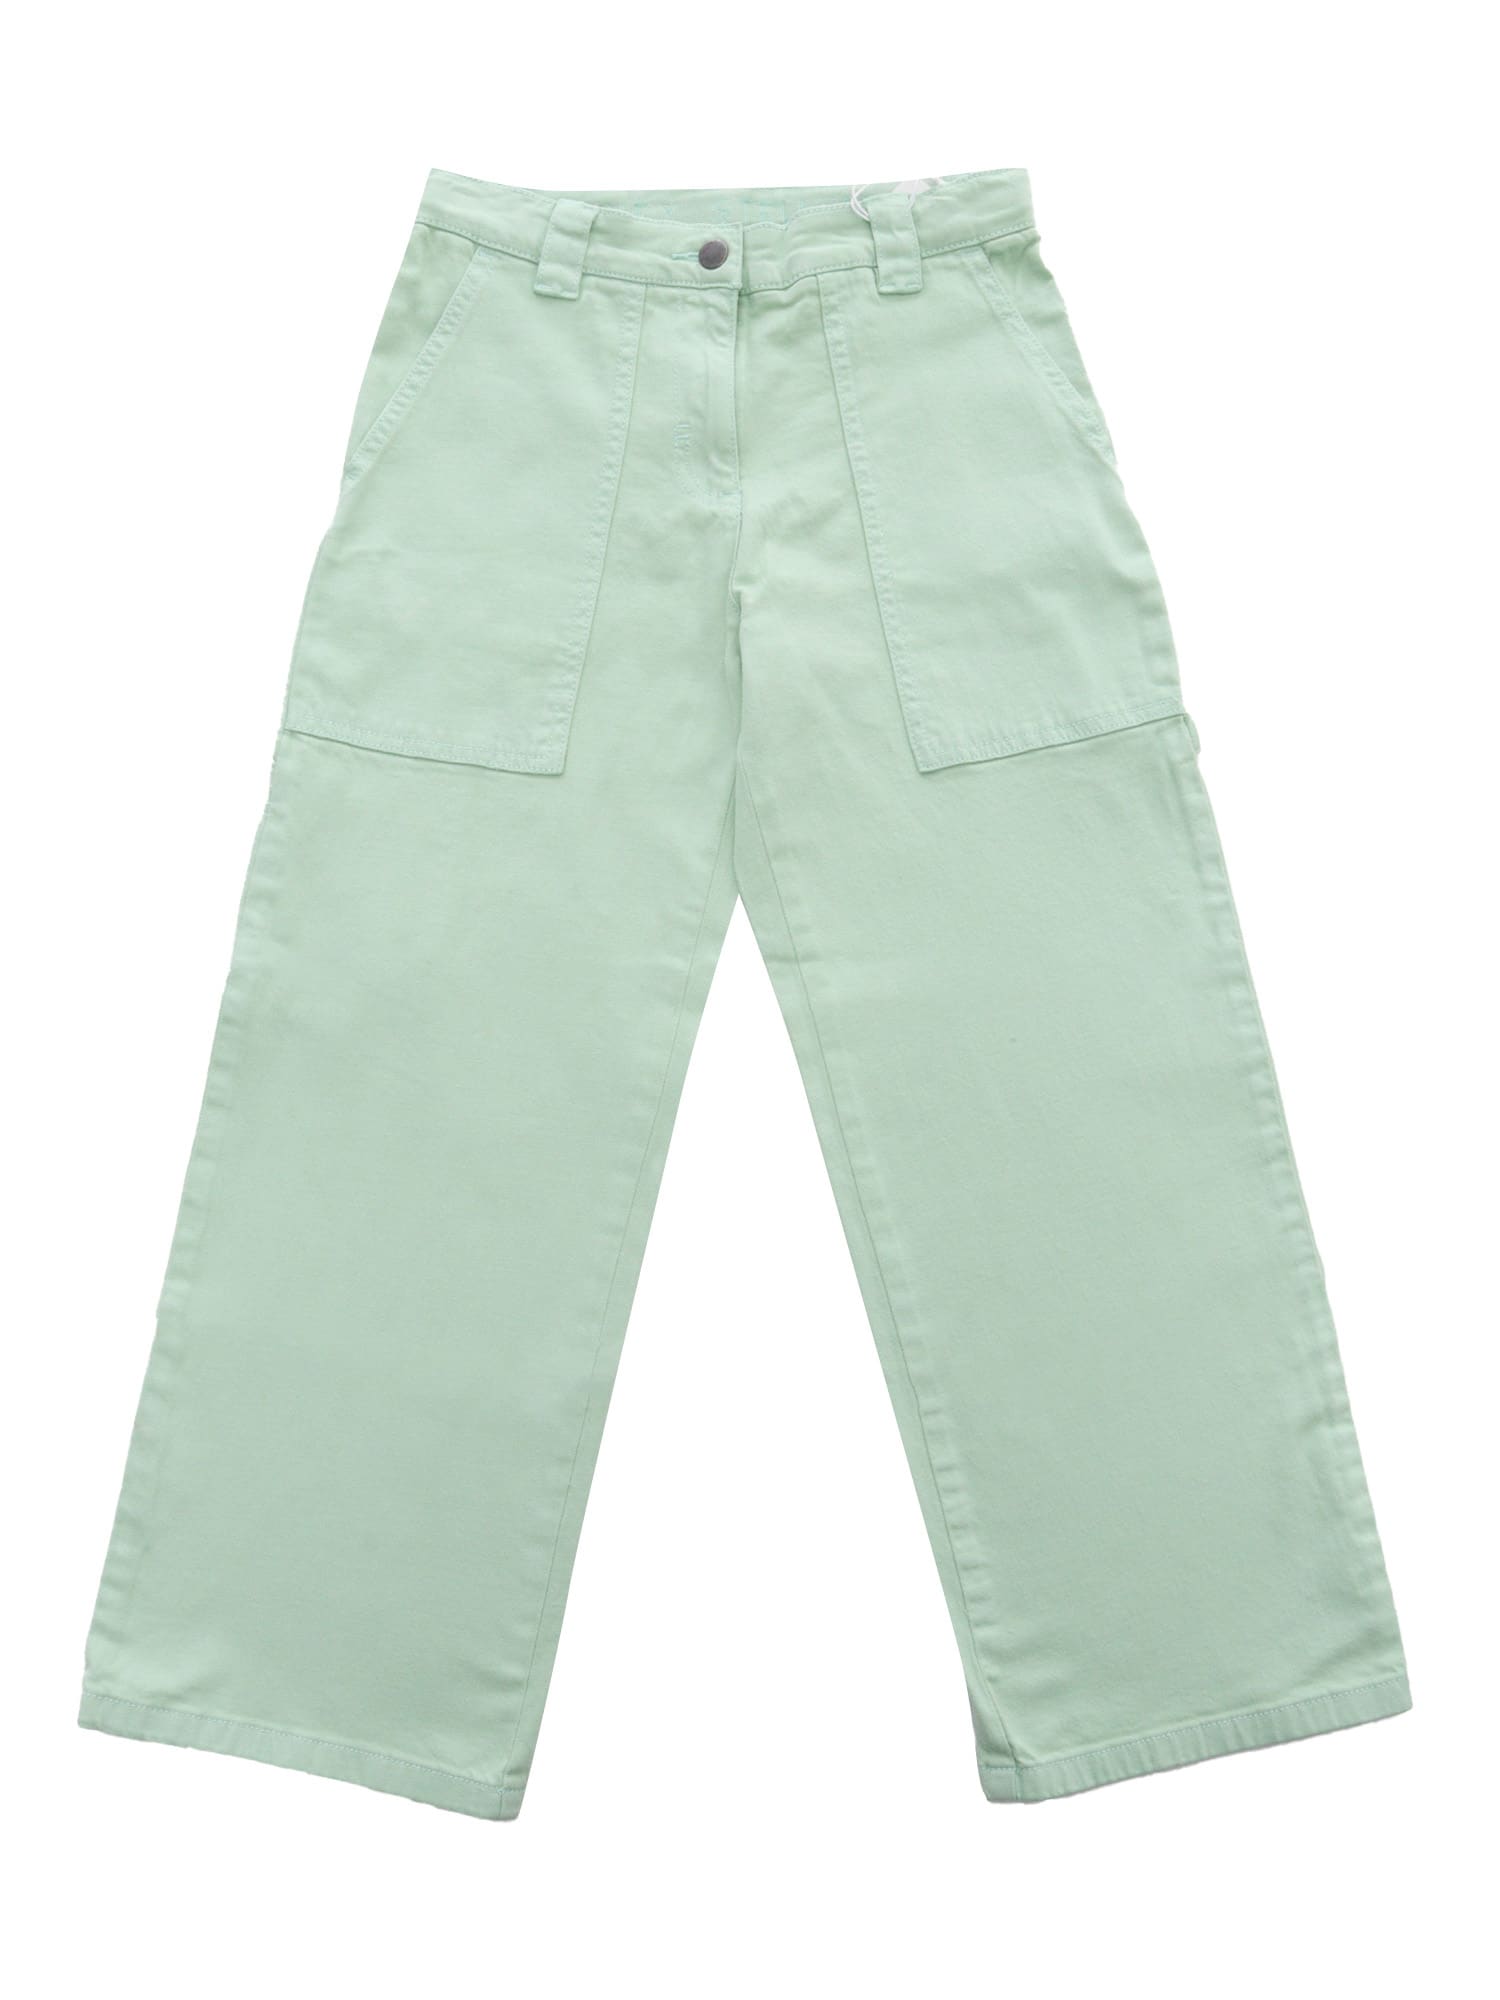 Stella Mccartney Kids' Green Mint Trousers